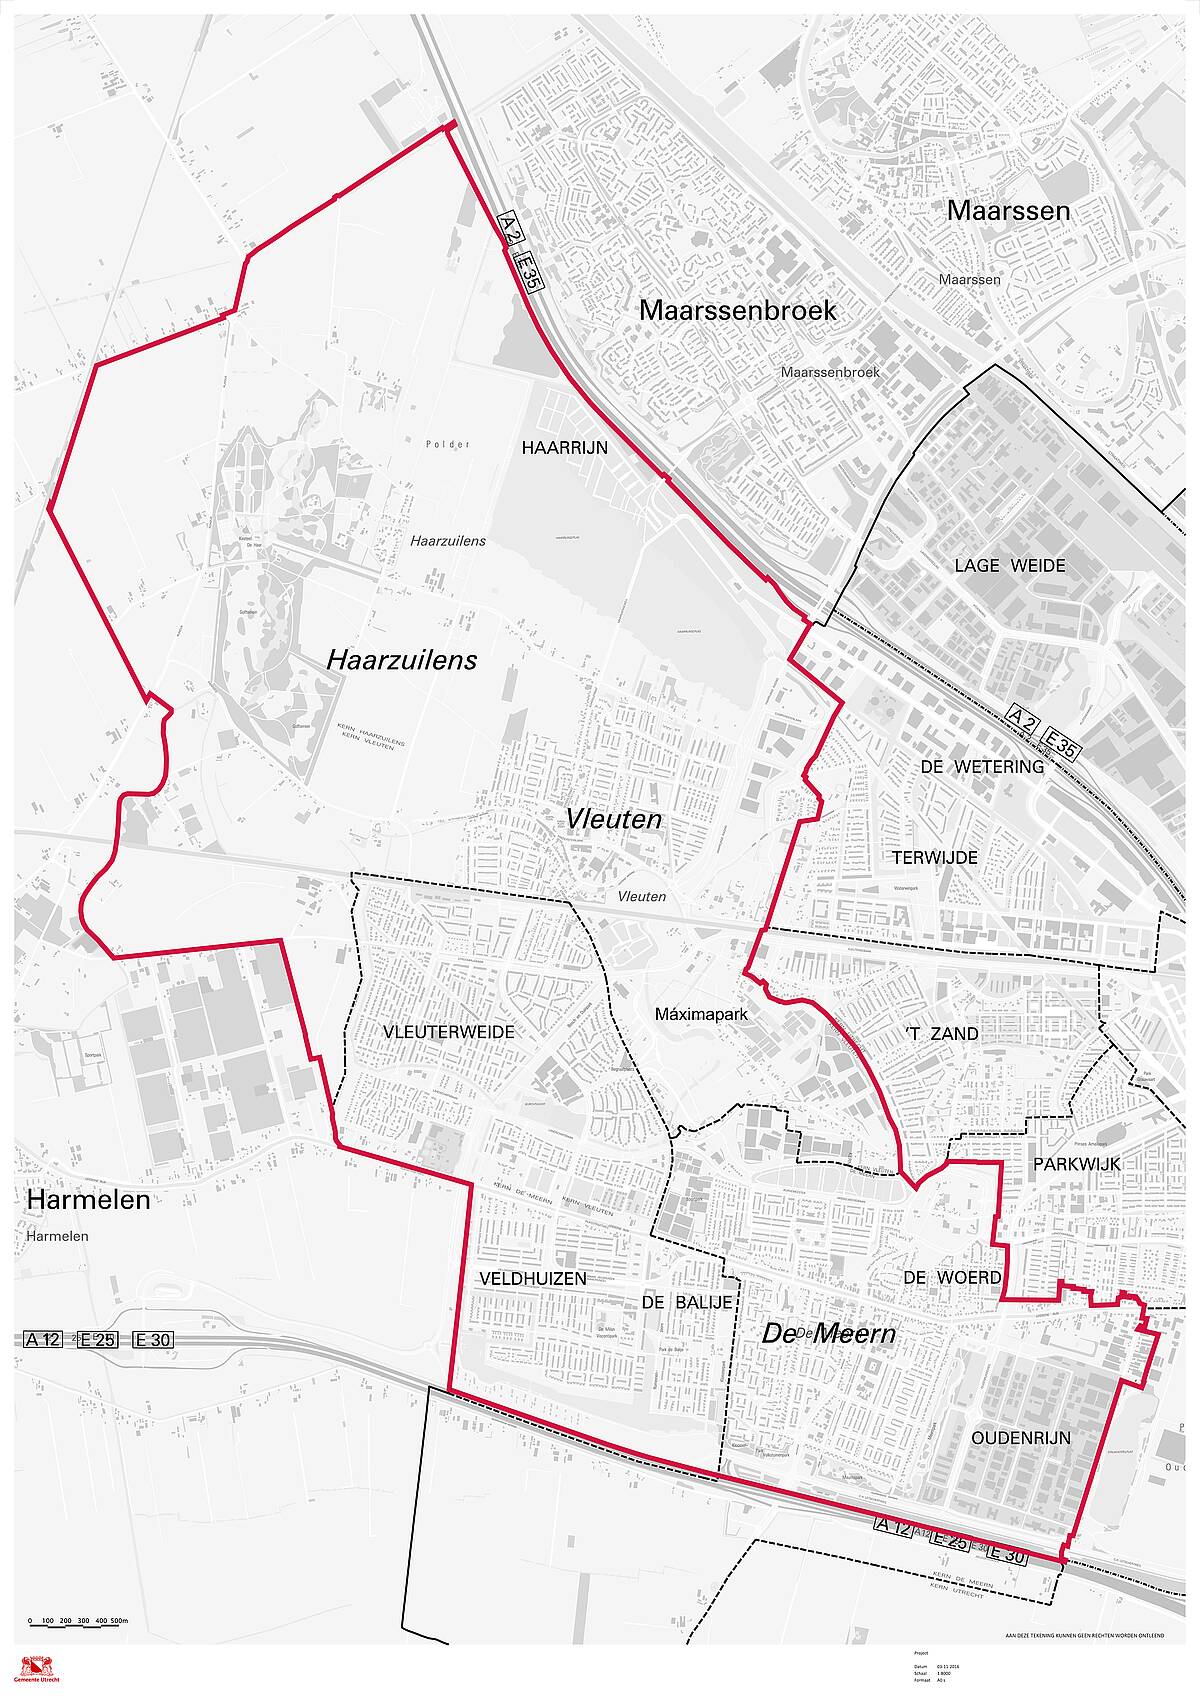 Kaart waarop het plangebied is aangegeven: De Meern, De Balije en Veldhuizen, Vleuterweide, Vleuten, Haarzuilens inclusief het buitengebied eromheen